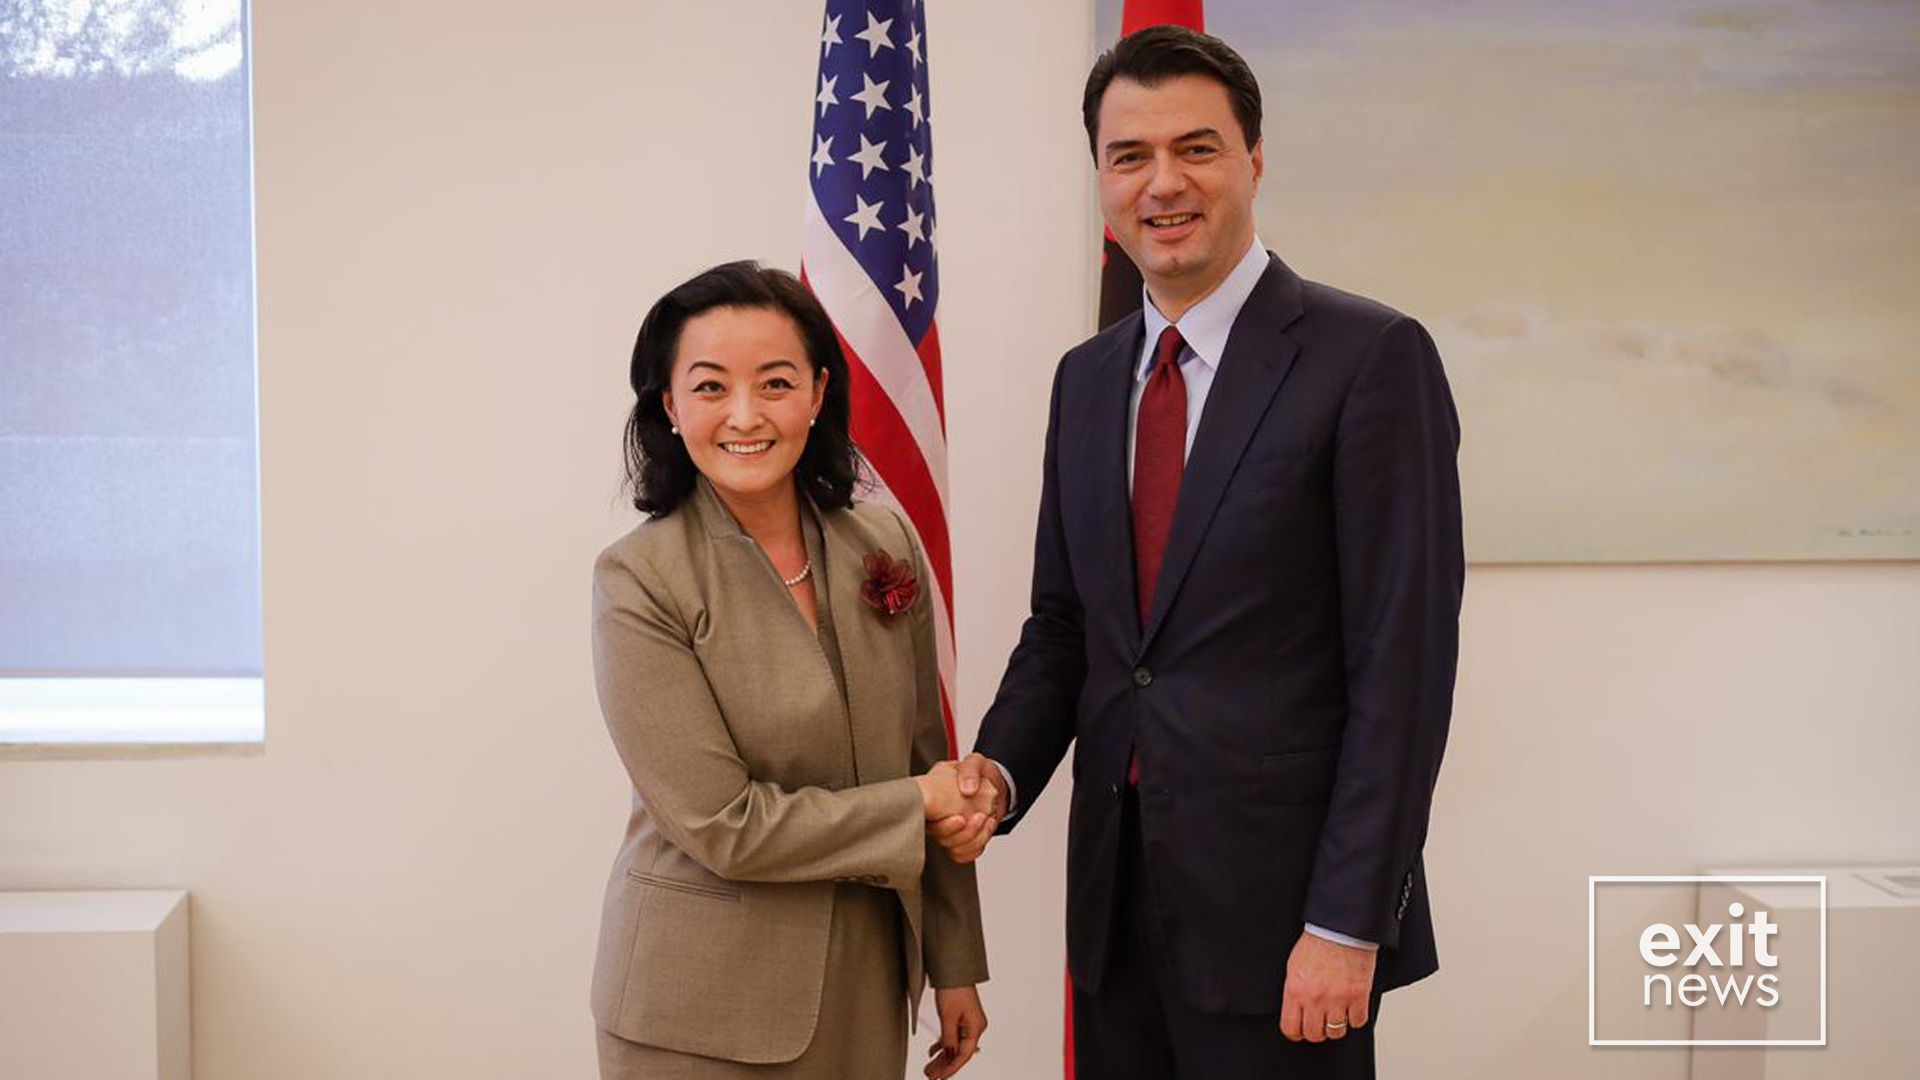 Berisha tregon bisedën mes Bashës dhe ambasadores amerikane Yuri Kim